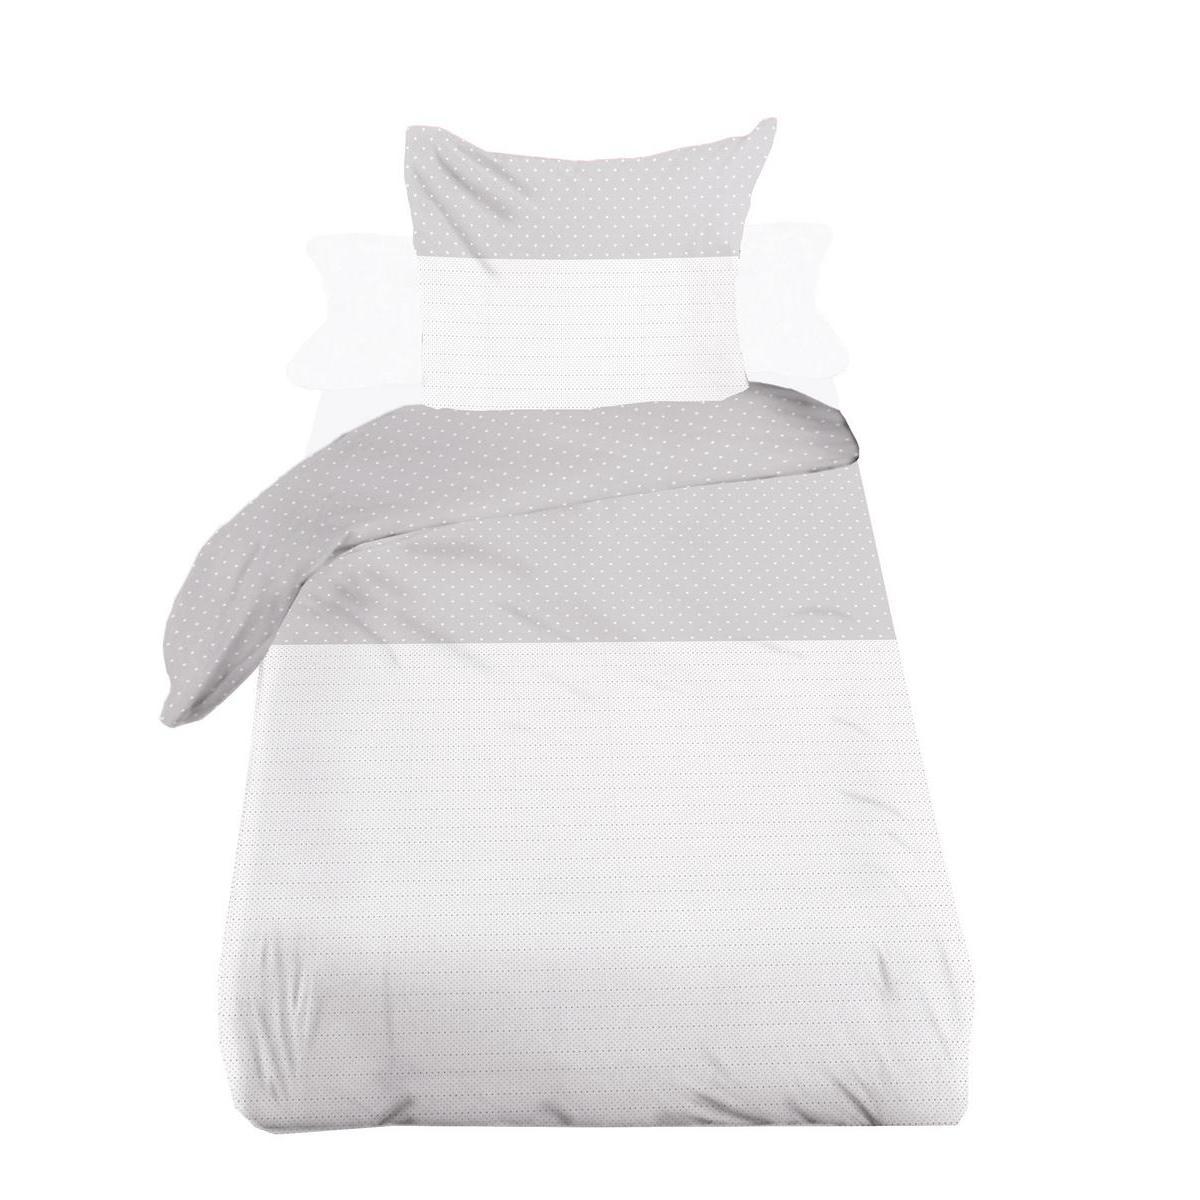 Parure de lit à pois - Coton et polyester - 140 x 200 cm - Blanc et gris